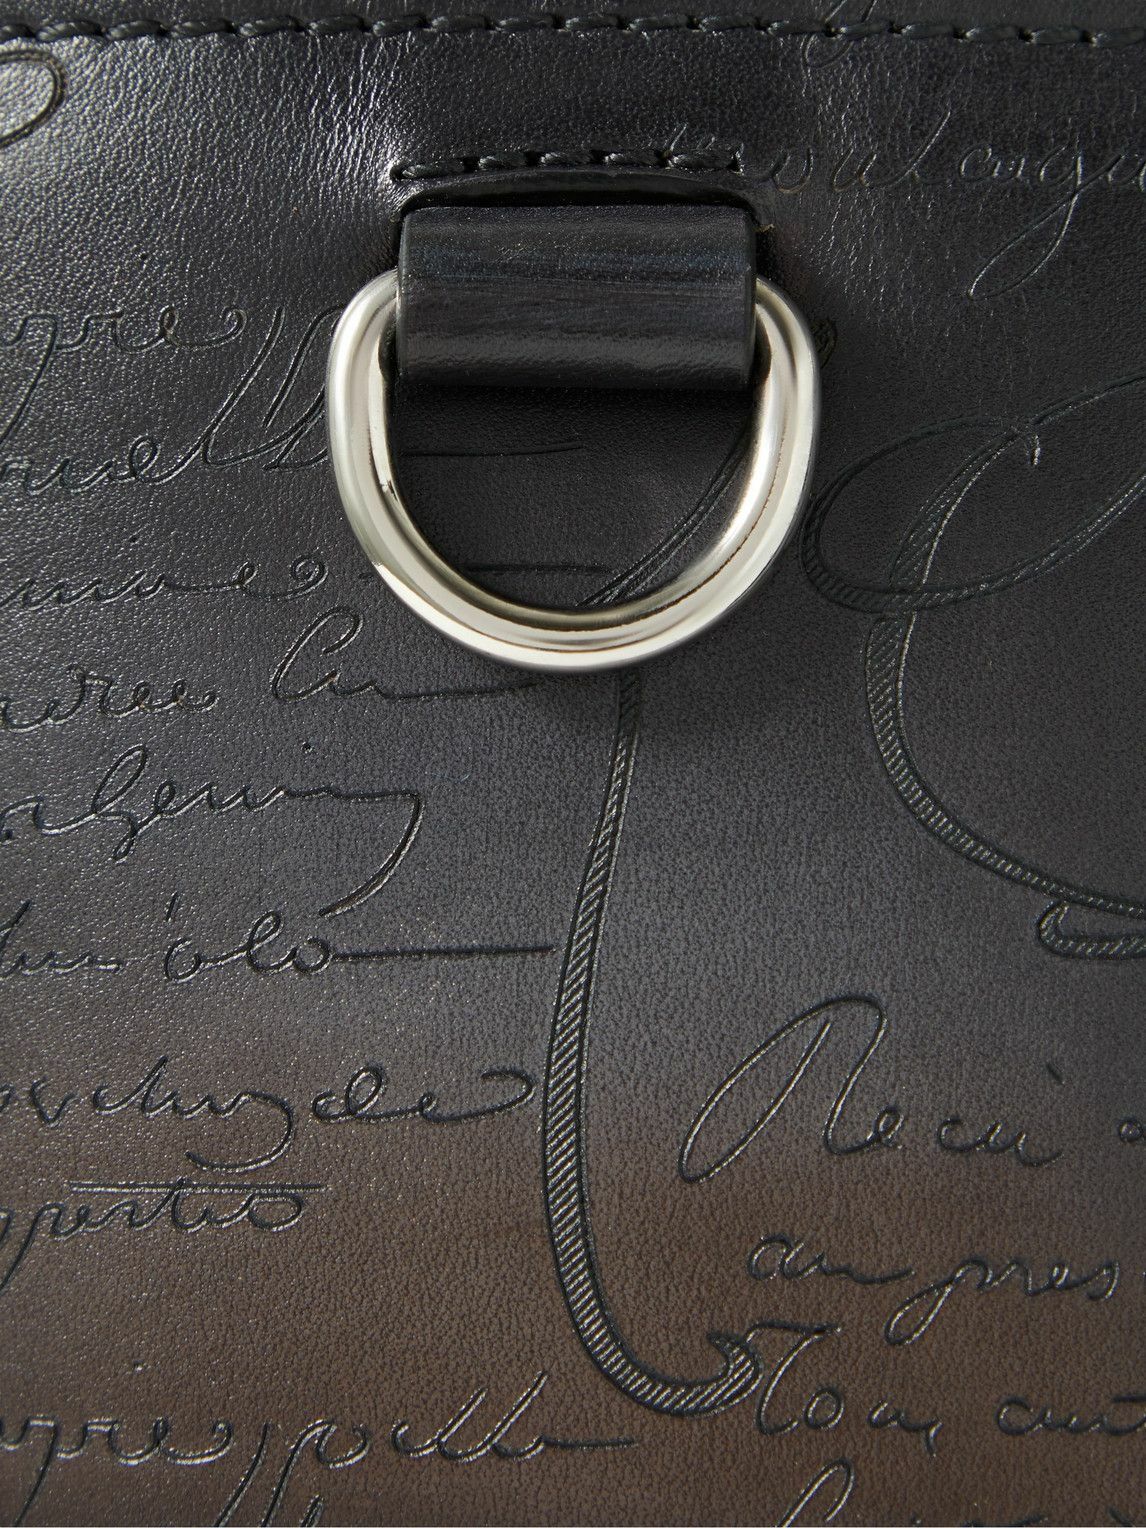 Berluti - Toujours Scritto Venezia Leather Tote Bag Berluti